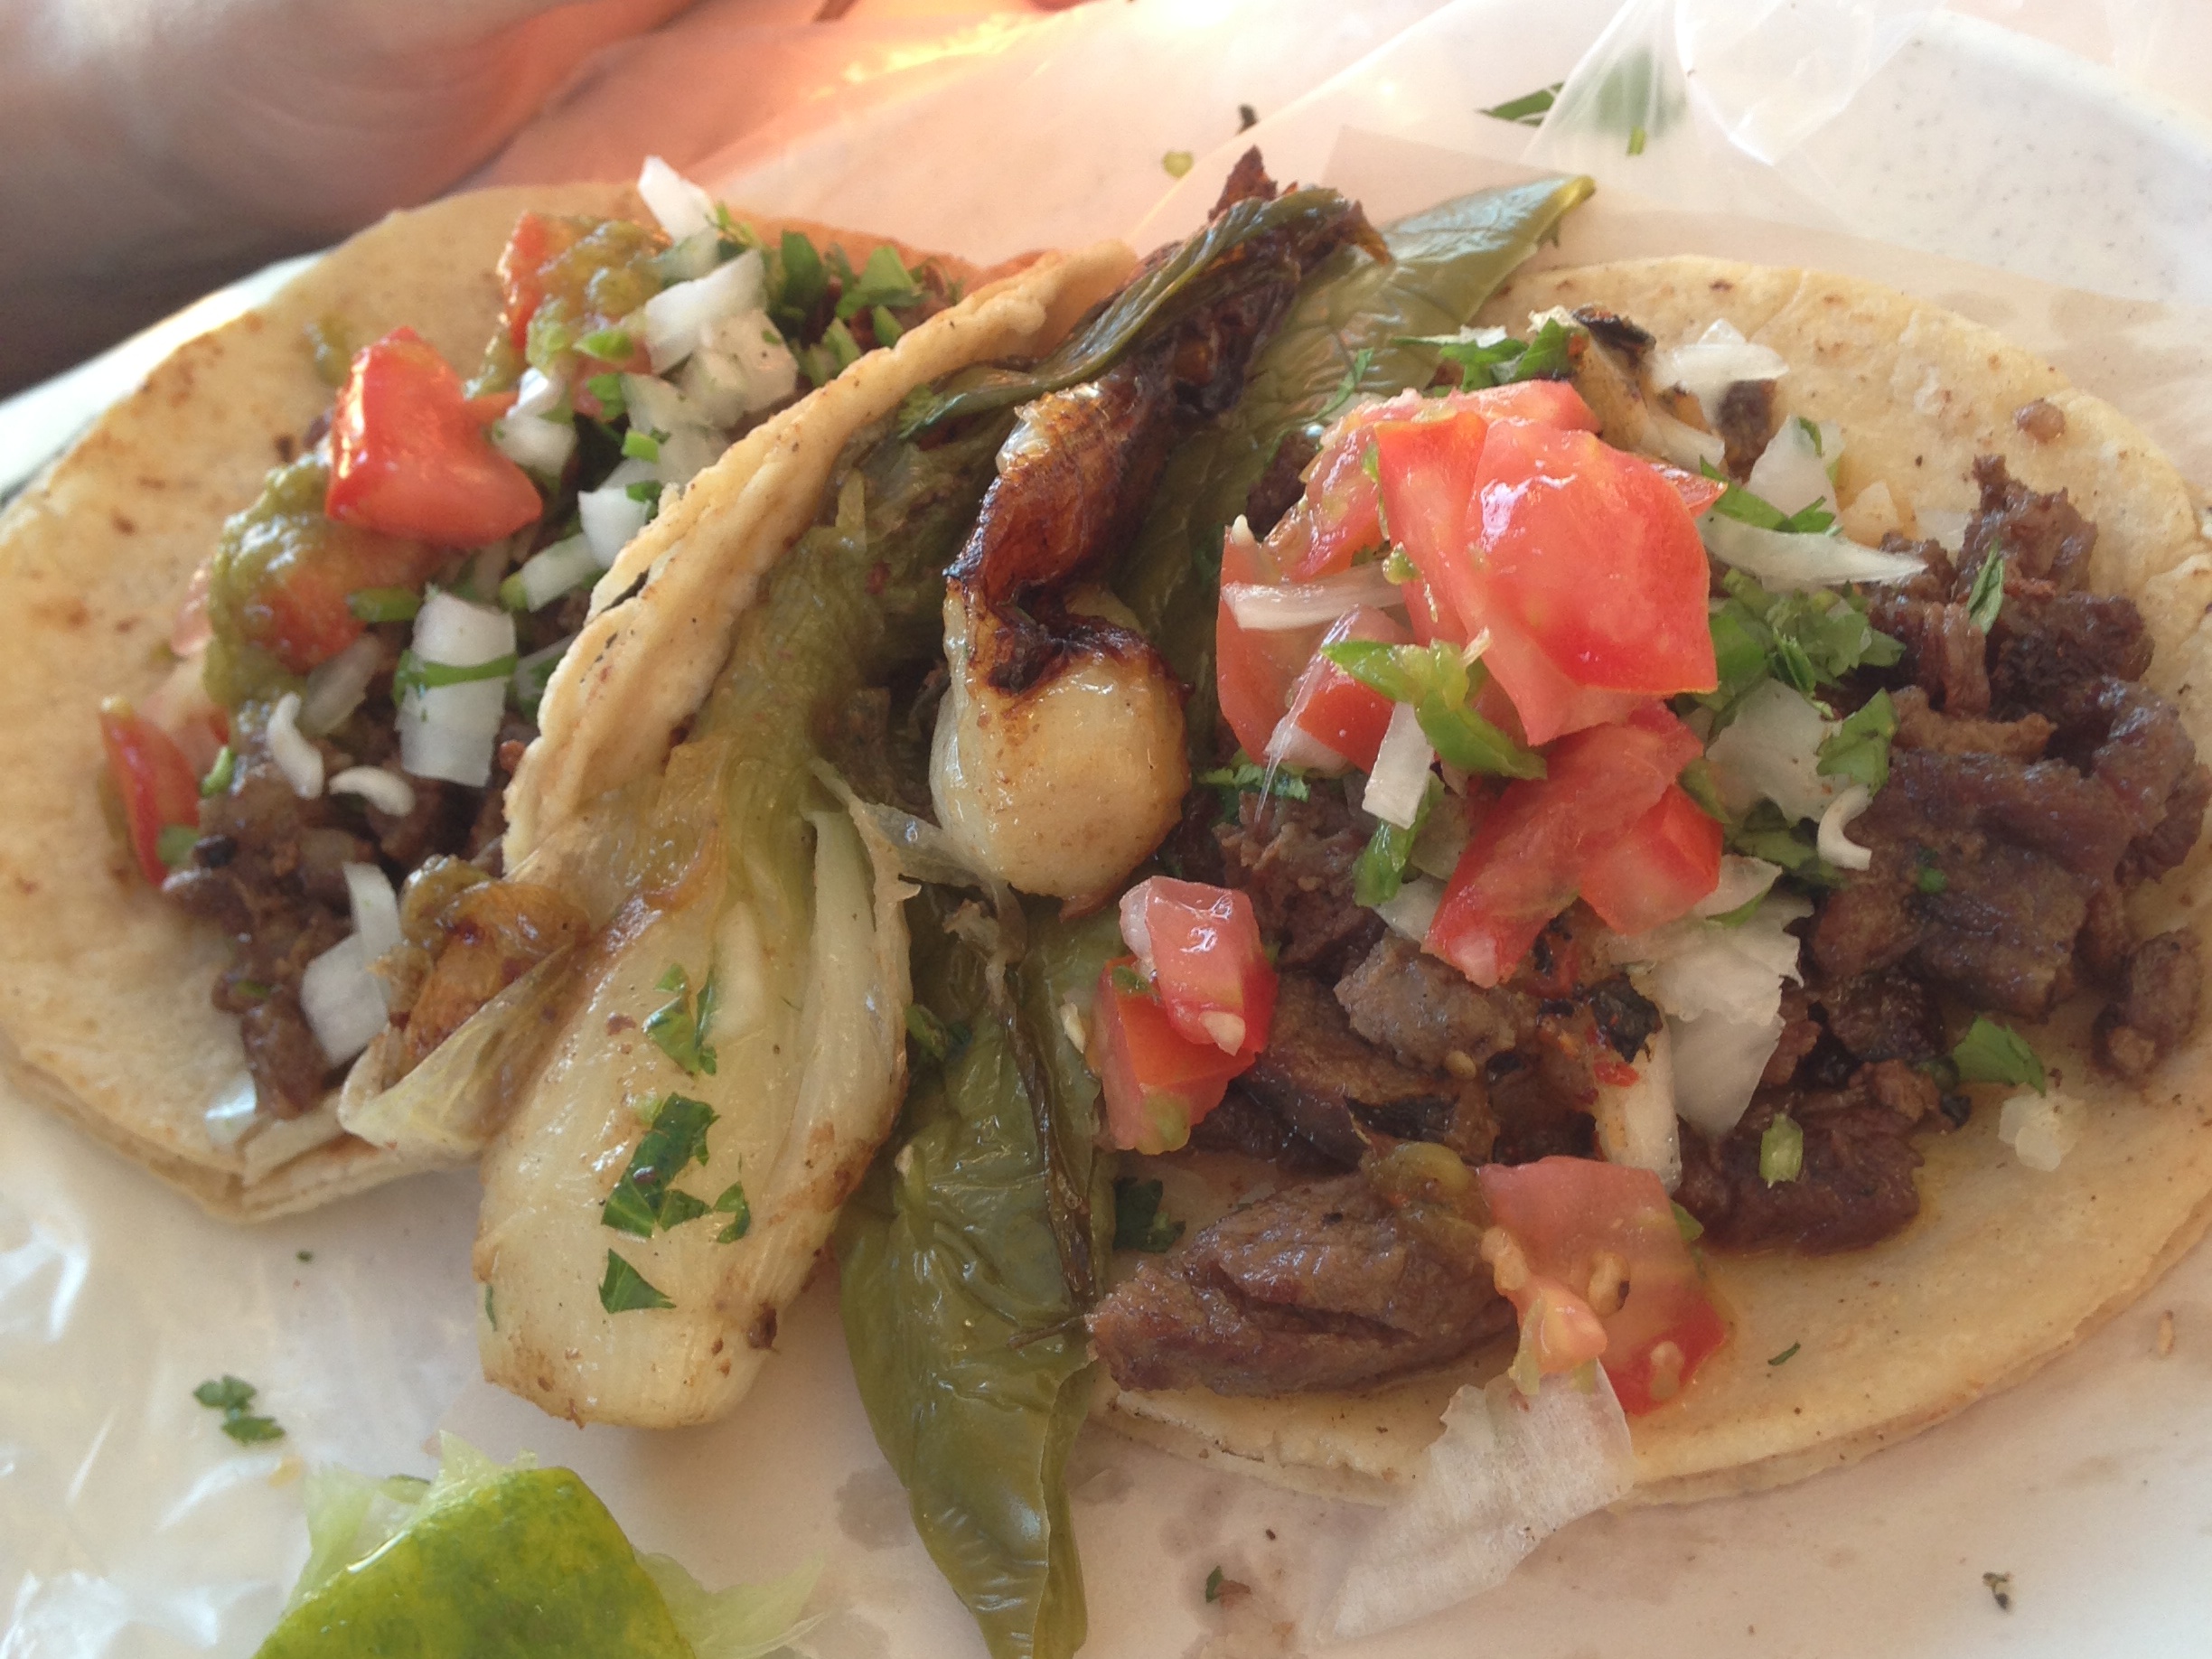 Amazing tacos!